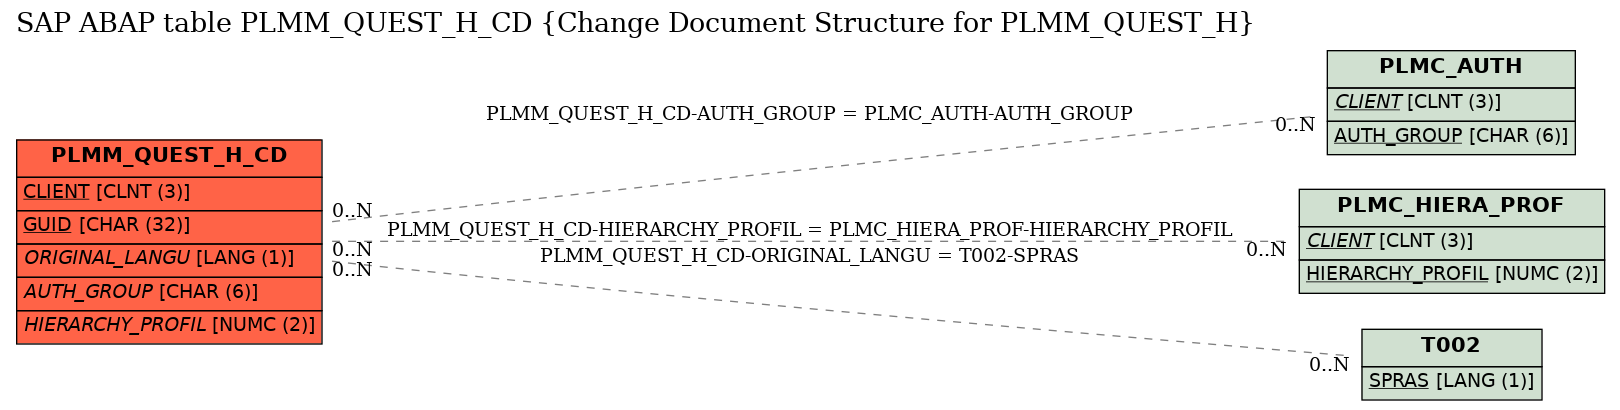 E-R Diagram for table PLMM_QUEST_H_CD (Change Document Structure for PLMM_QUEST_H)